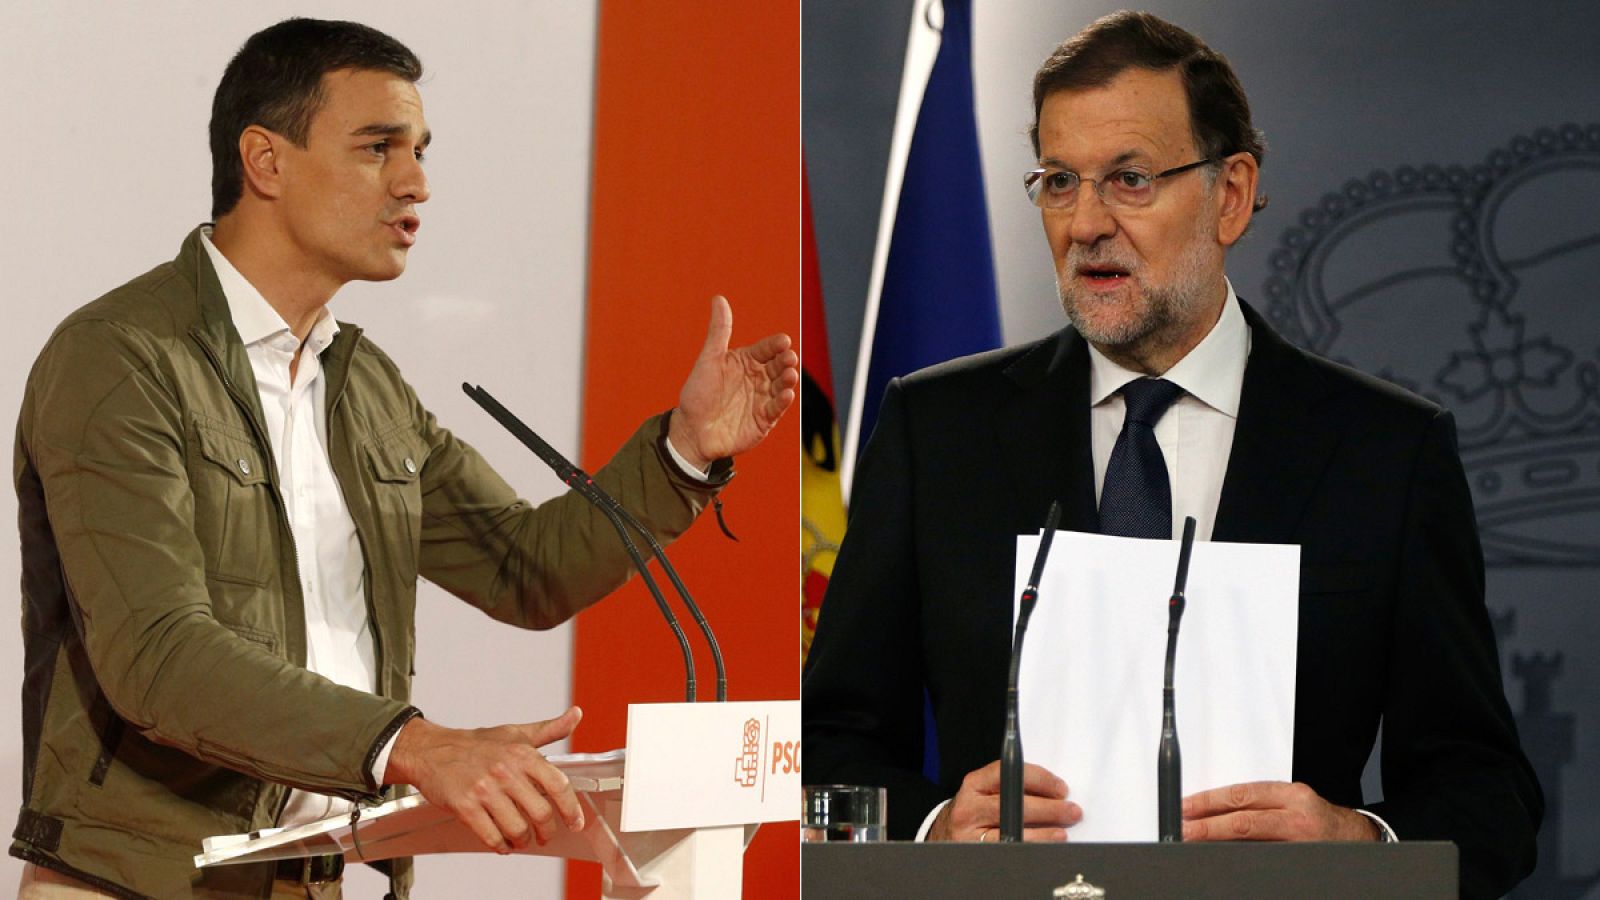 Pedro Sánchez y Mariano Rajoy debatirán en un cara a cara electoral en la Academia de Televisión